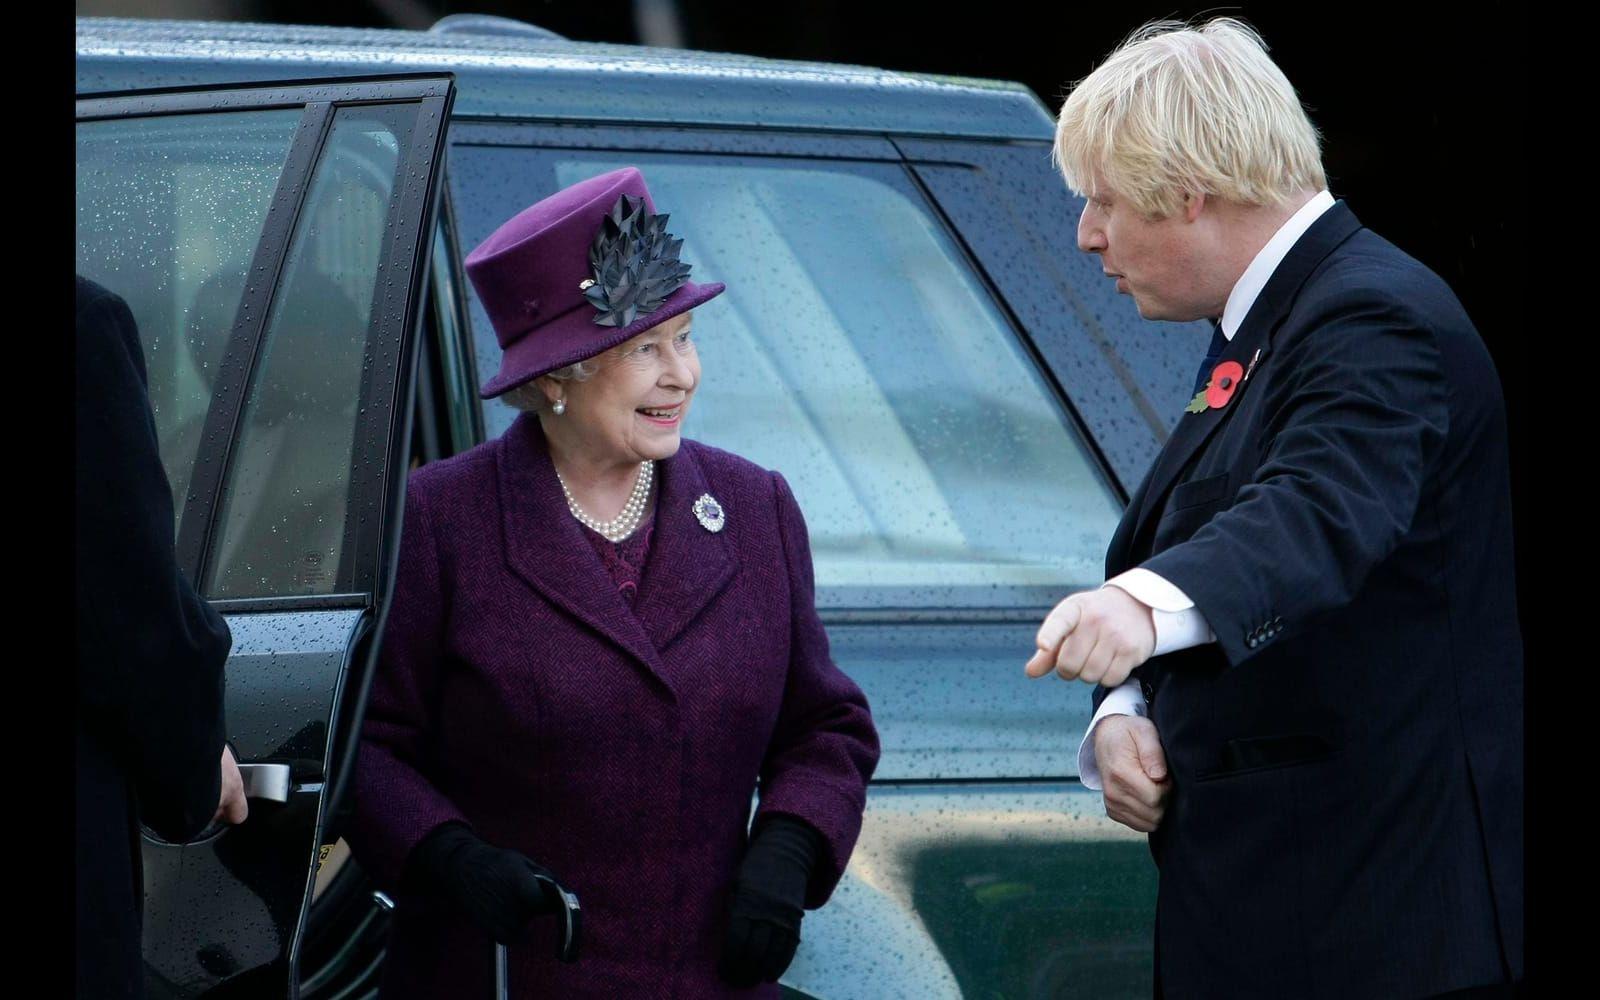 2008: Boris Johnson tvingades be om offentlig ursäkt sedan han sagt att drottningen Elizabeth  reser runt i samväldet och möts av "flag-waving piccaninnies”. Det senare ett nedsättande ord för mörkhyade barn. Foto: Stella